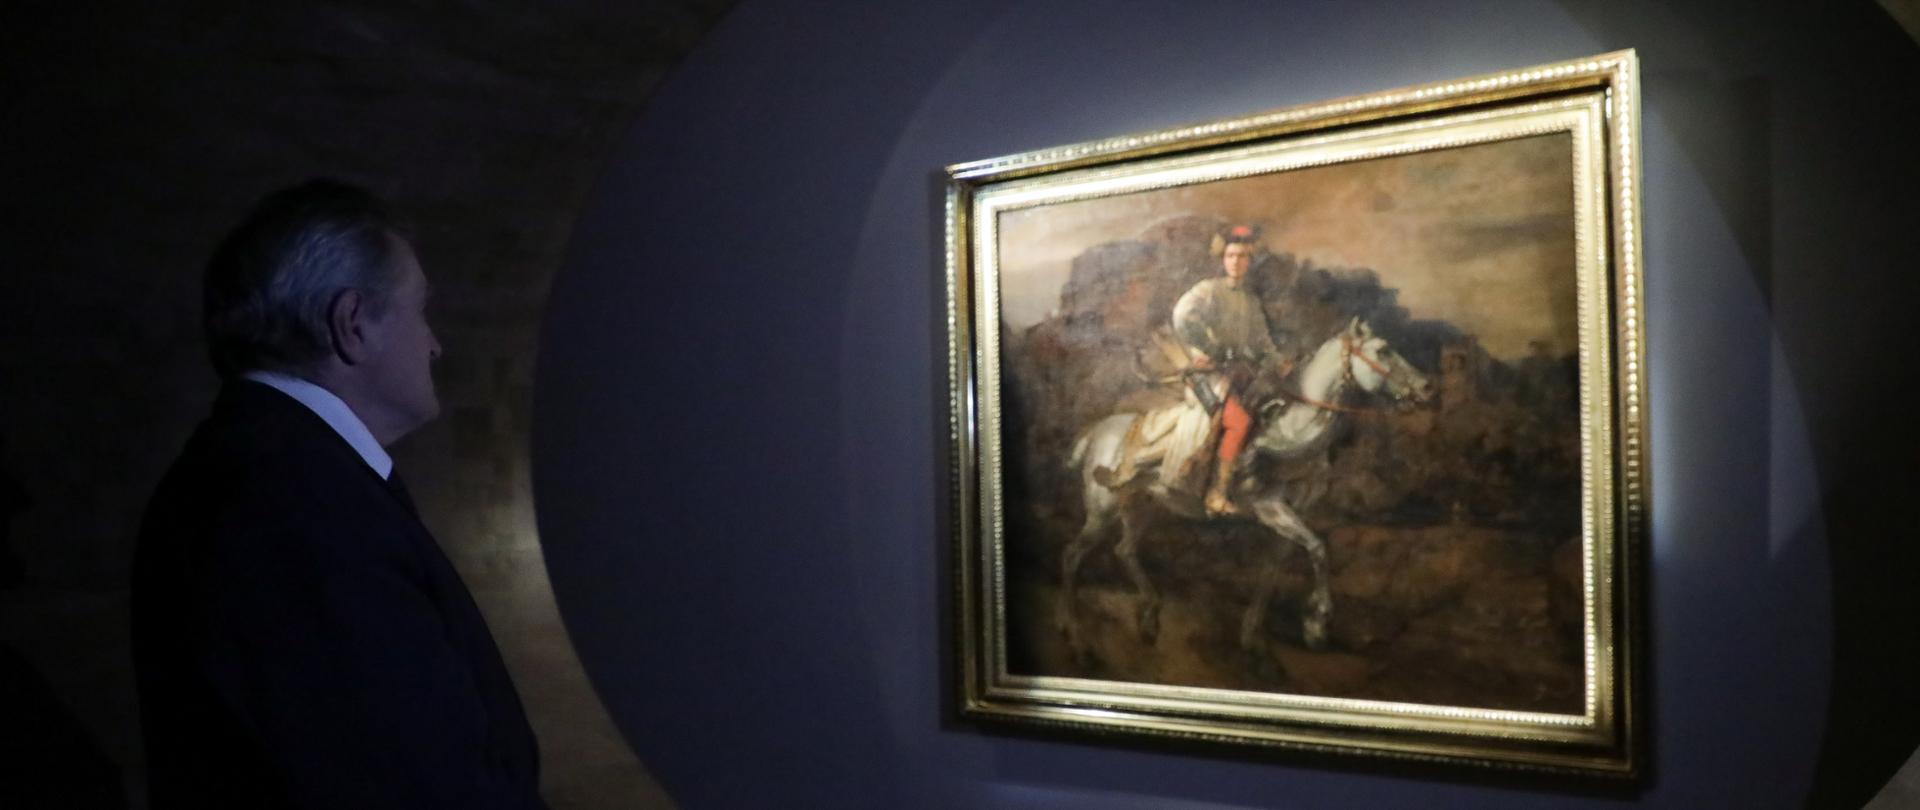 „Jeździec polski” Rembrandta i ostatni dzień z Wyczółkowskim na Wawelu, fot. Danuta Matloch